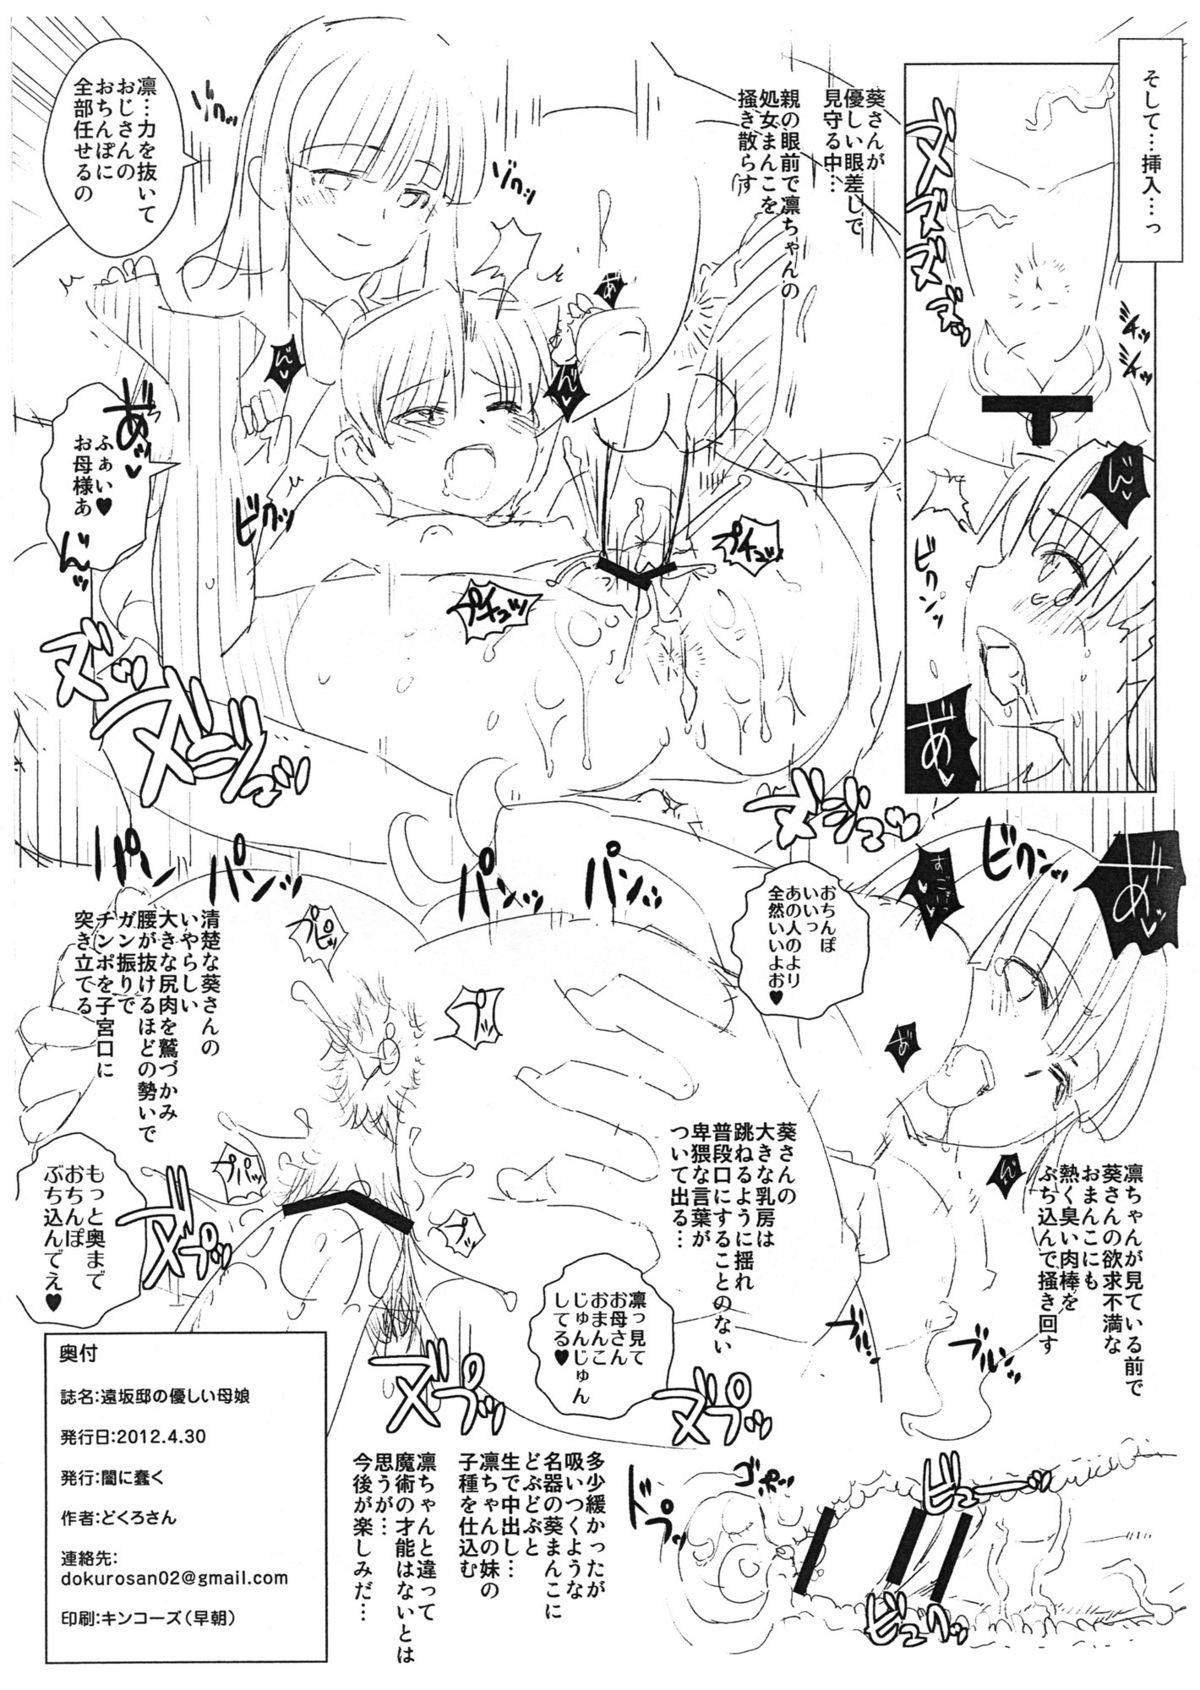 Piercing Tohsaka-tei no Hidoku Yasashii Shimai + Paper - Fate zero Bizarre - Page 26